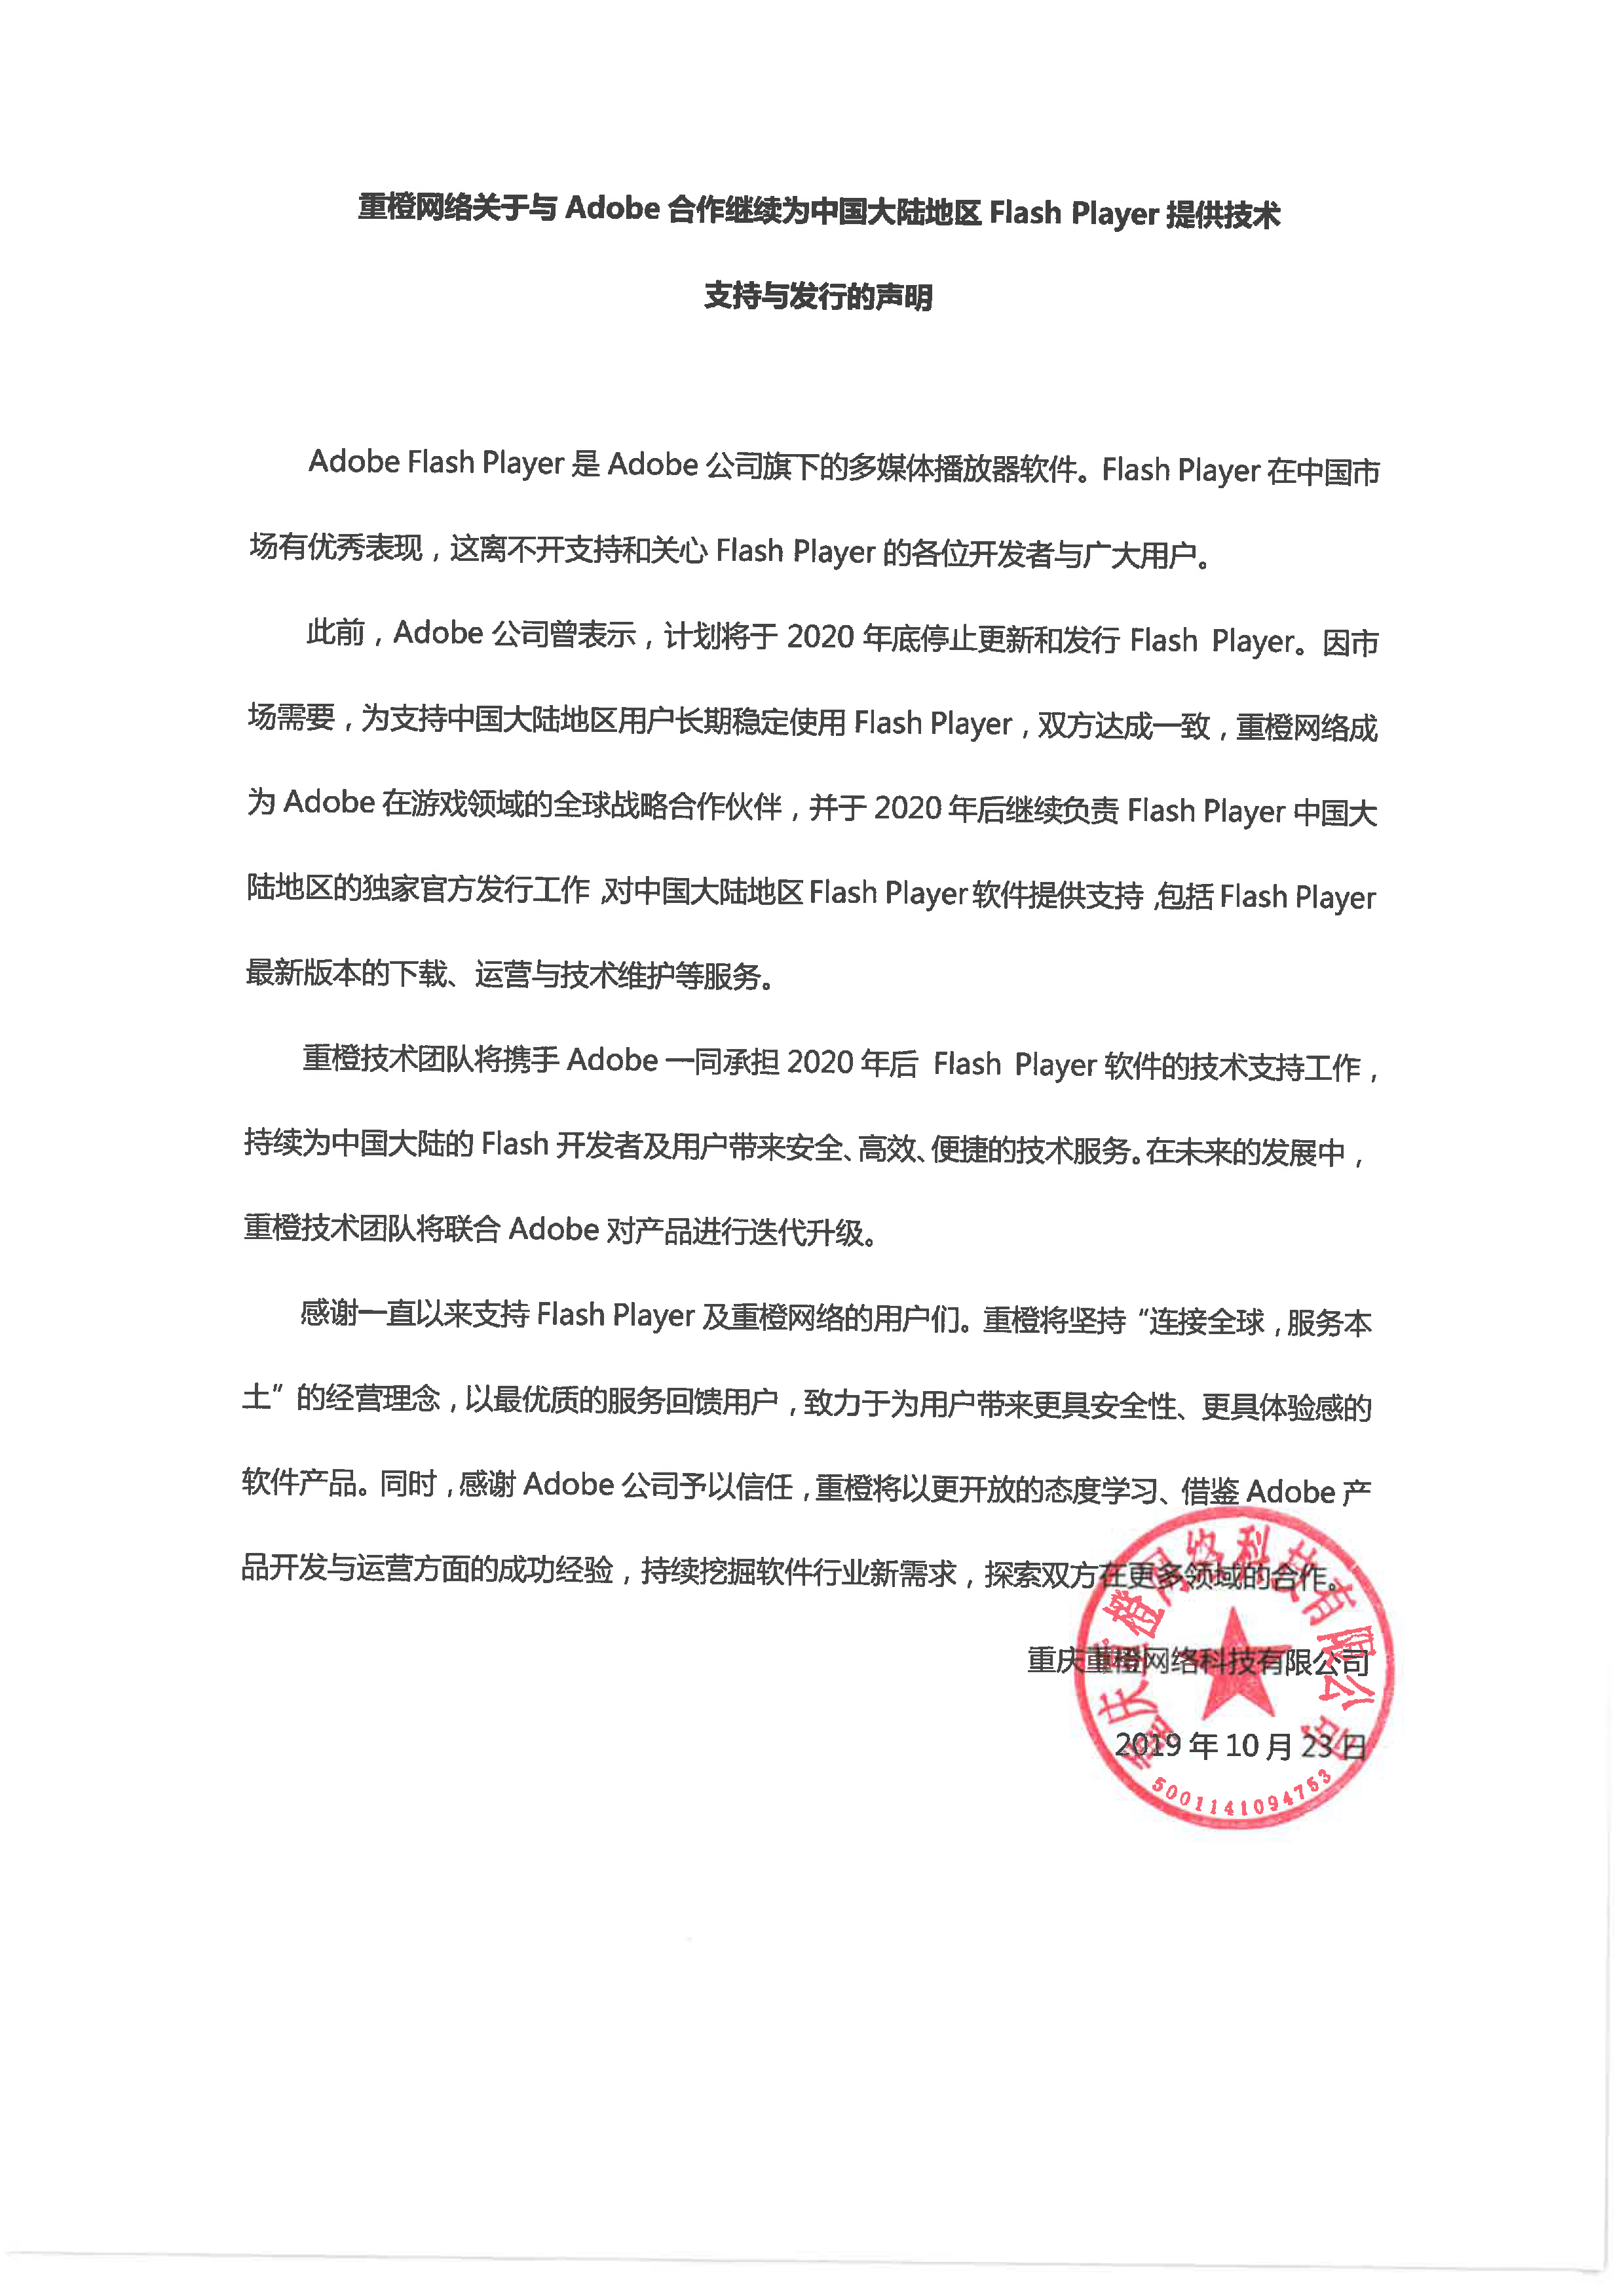 重橙网络关于与Adobe合作继续为中国大陆地区Flash Player提供技术支持与发行的声明（扫描件）-1022.jpg